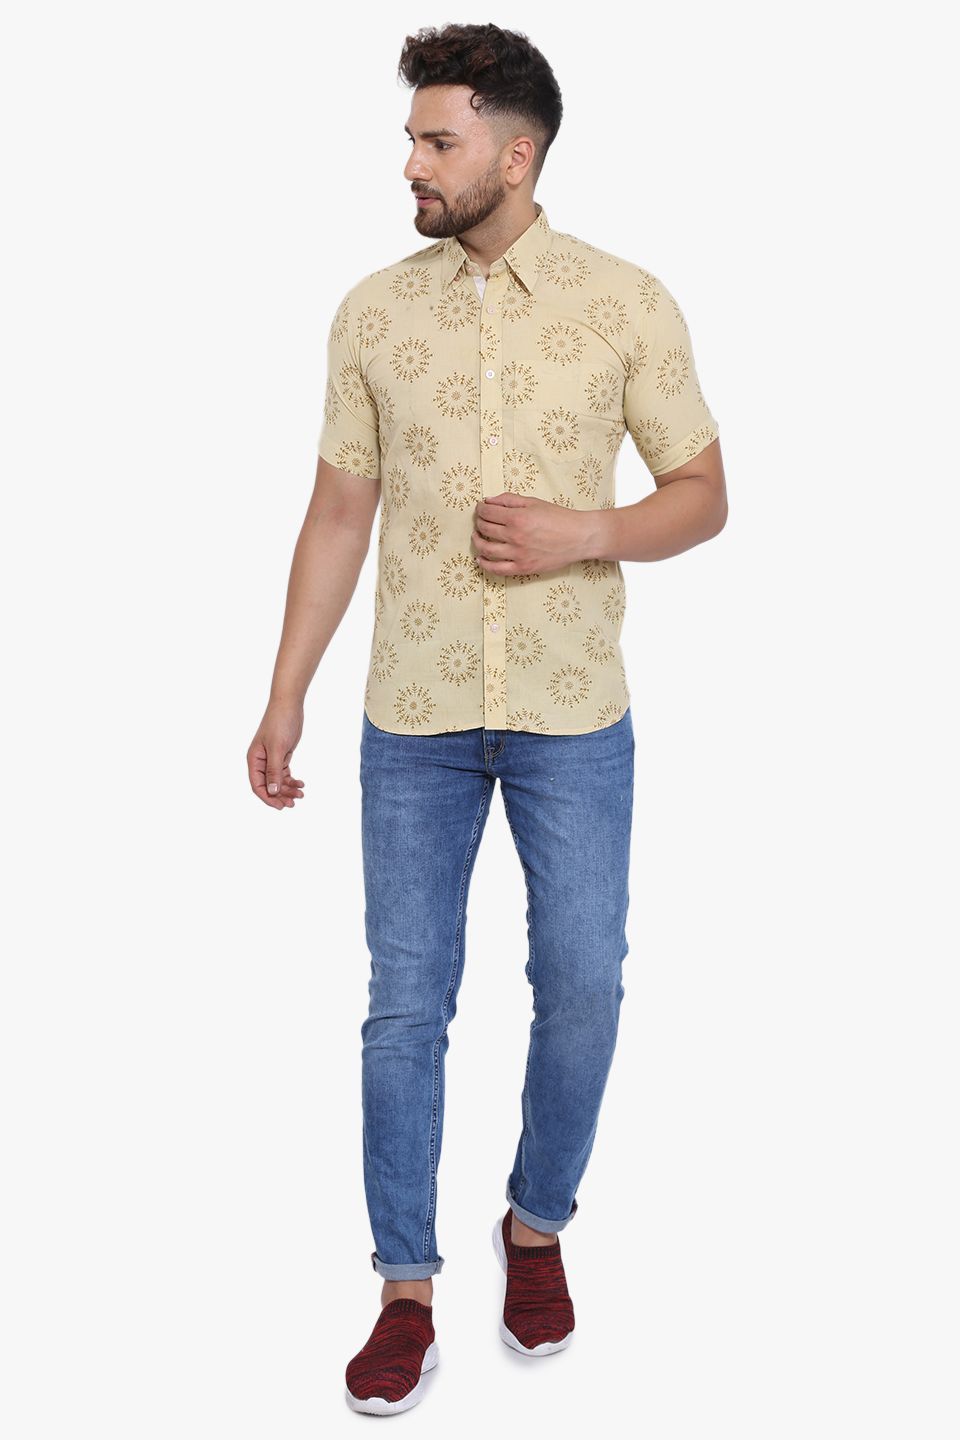 Jaipur 100% Cotton Camel Shirt